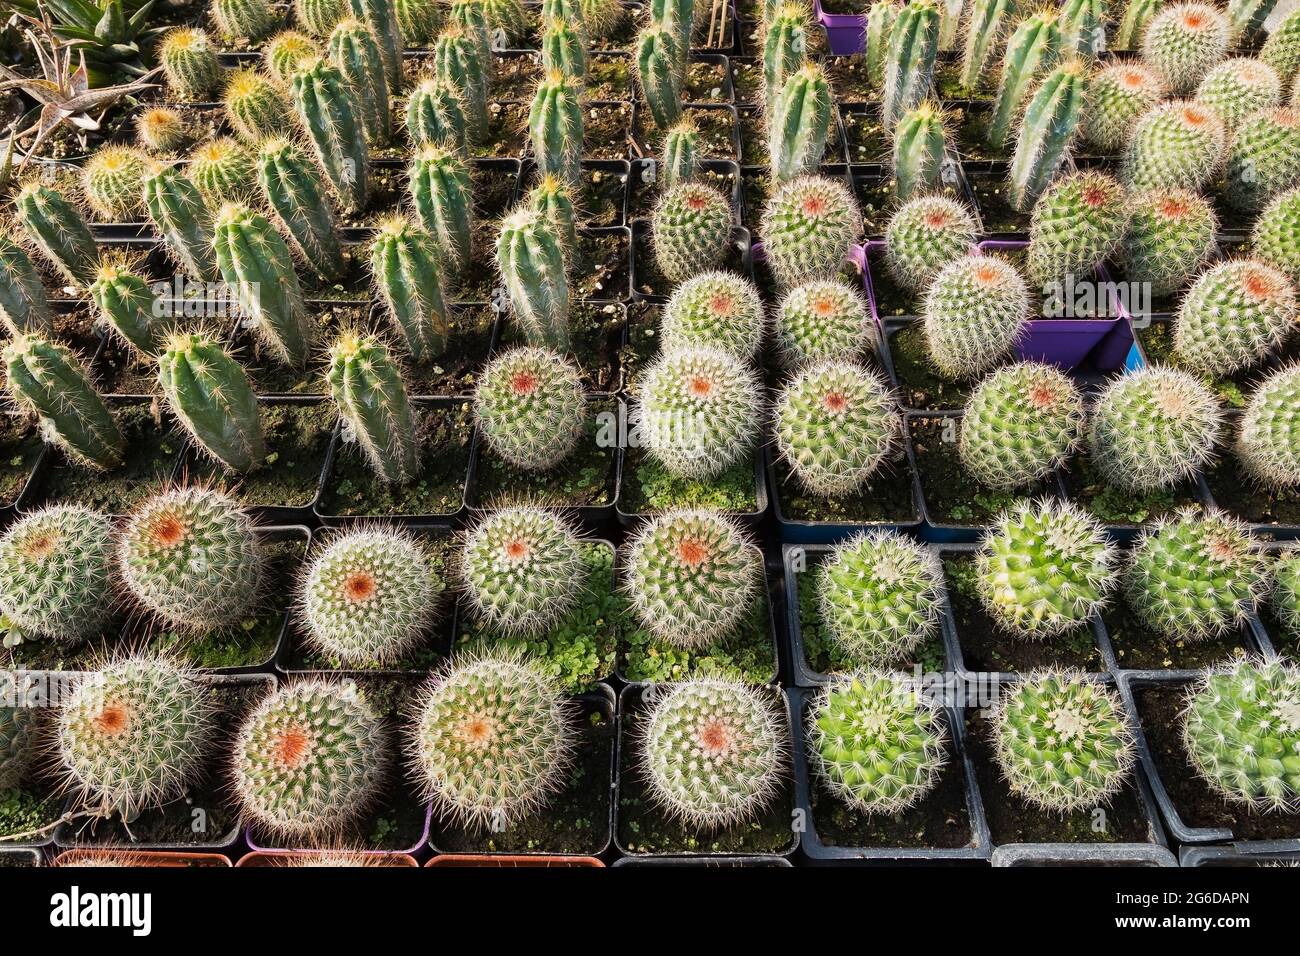 Plantes mixtes Cacti poussant dans des récipients en plastique à l'intérieur d'une serre. Banque D'Images